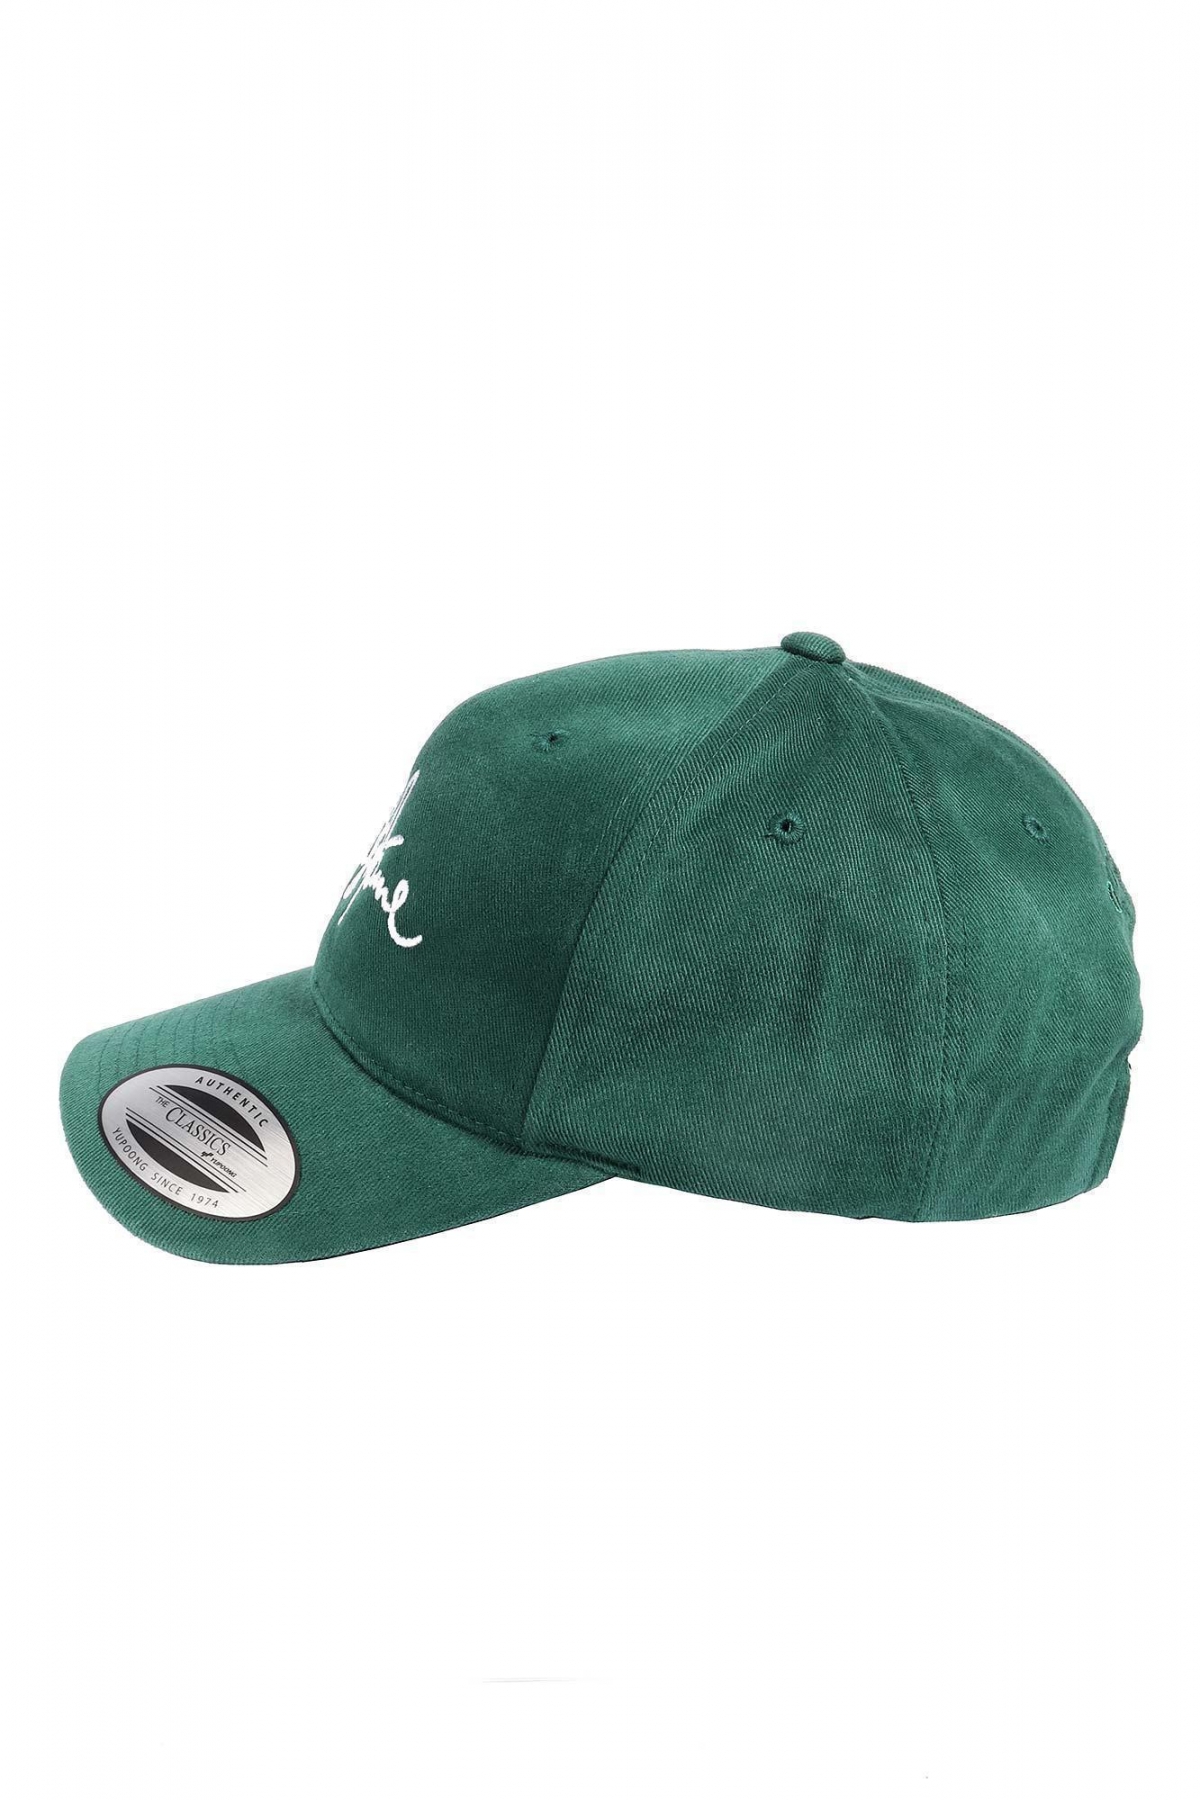 Классическая унисекс зеленая хлопковая бейсболка с белой вышивкой OUT FO FAME 